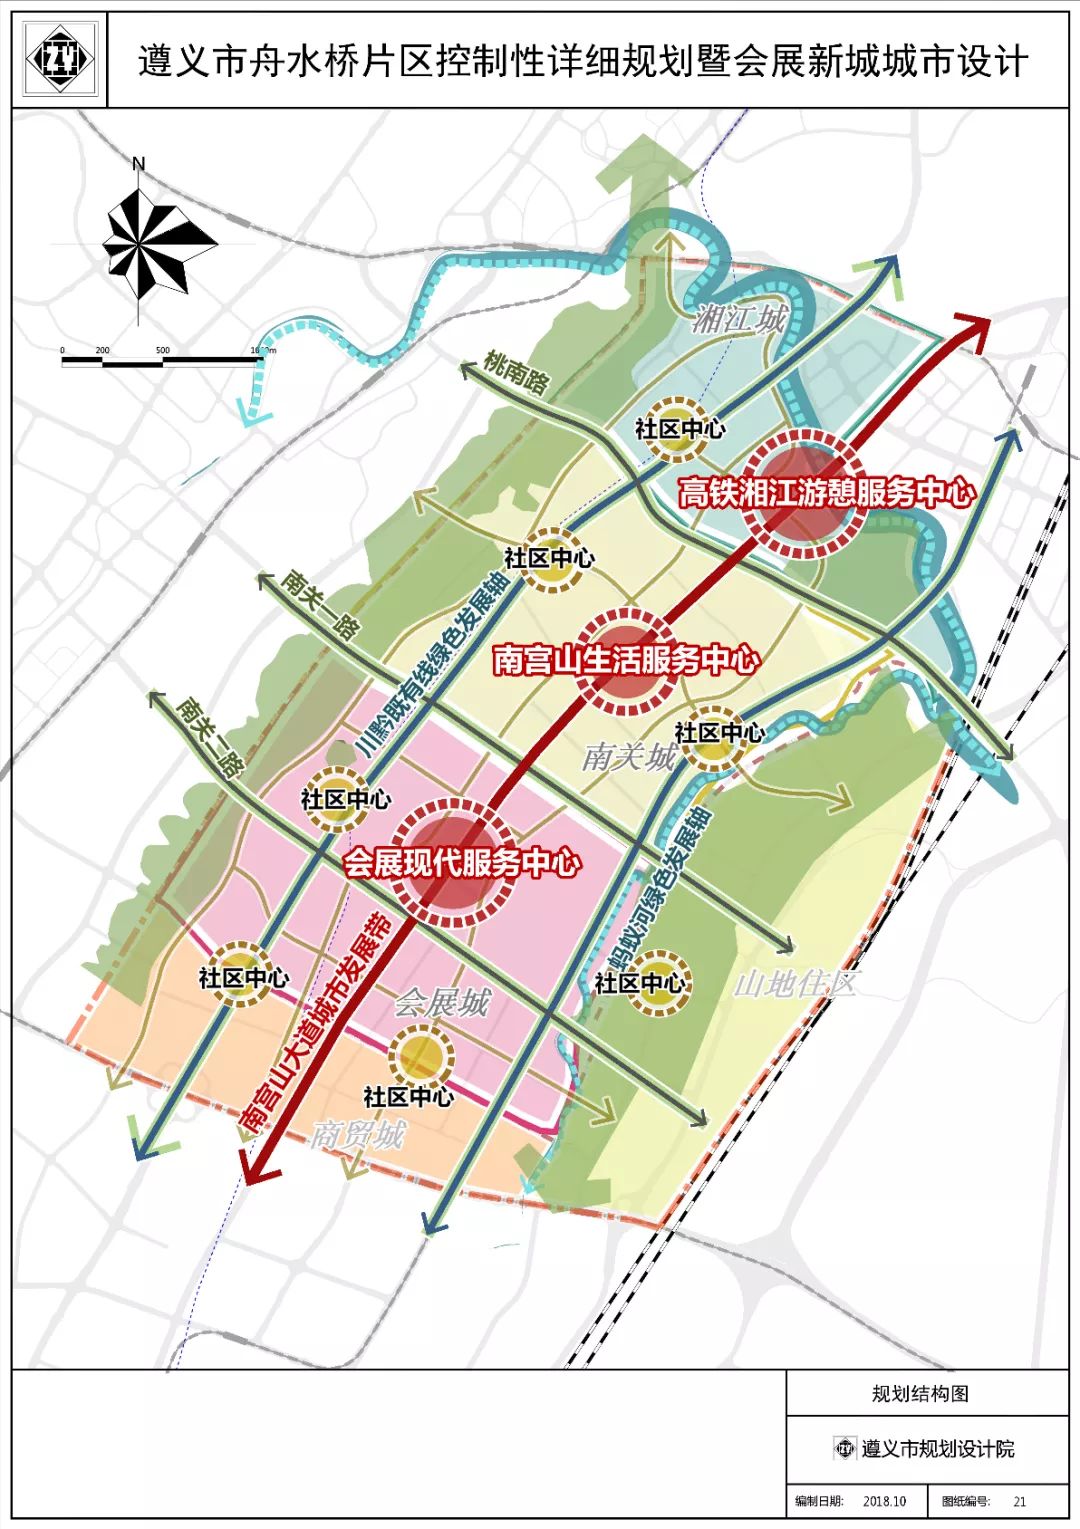 遵义市舟水桥片区规划图出炉定位为遵义城市新中心